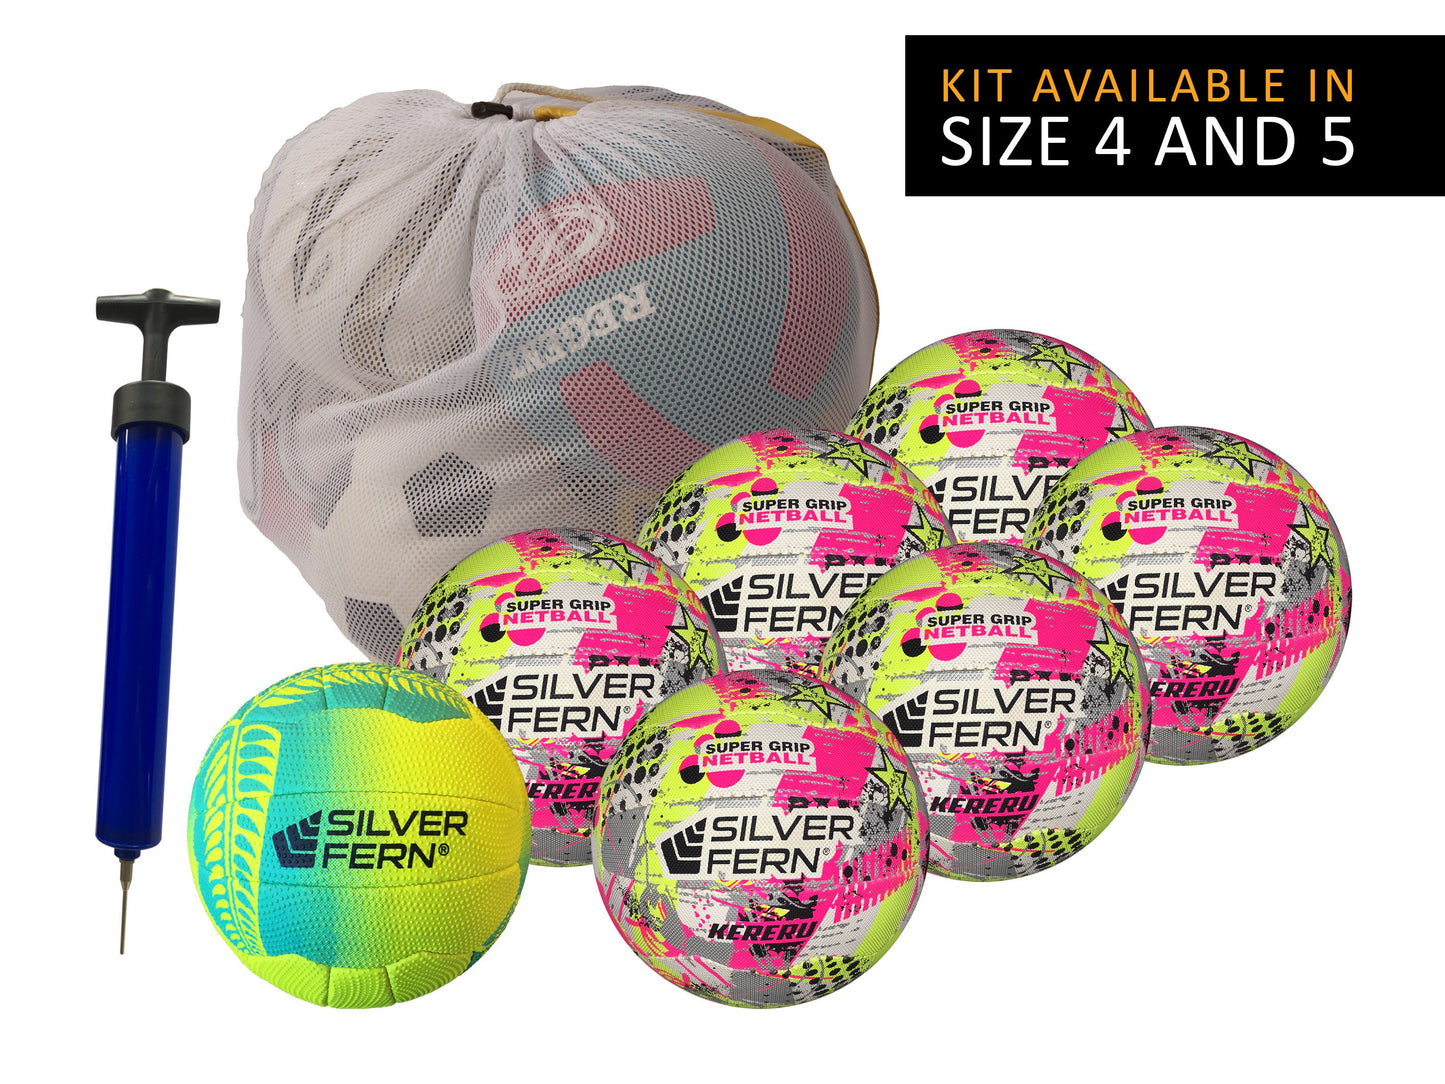 Silver Fern Netball Kit - 7 Ball